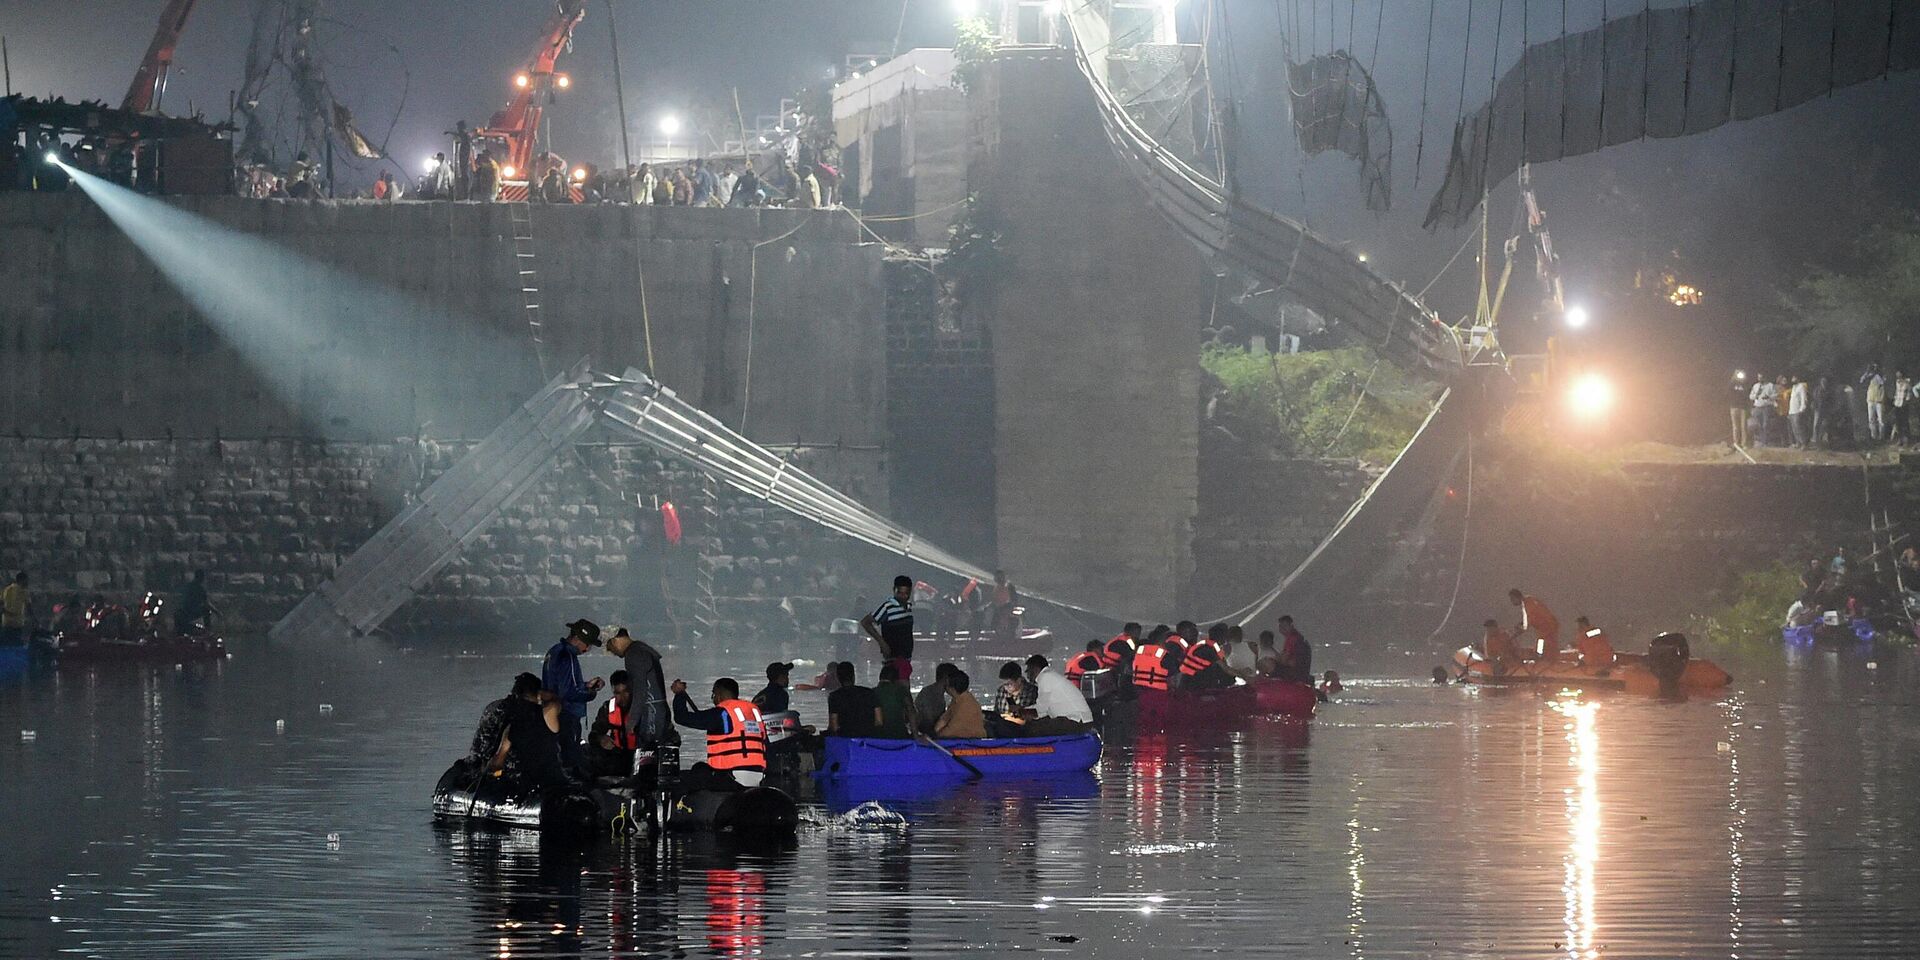 Обрушение моста через реку Маччху в Морби, Индия. 31 октября 2022 года - ИноСМИ, 1920, 31.10.2022